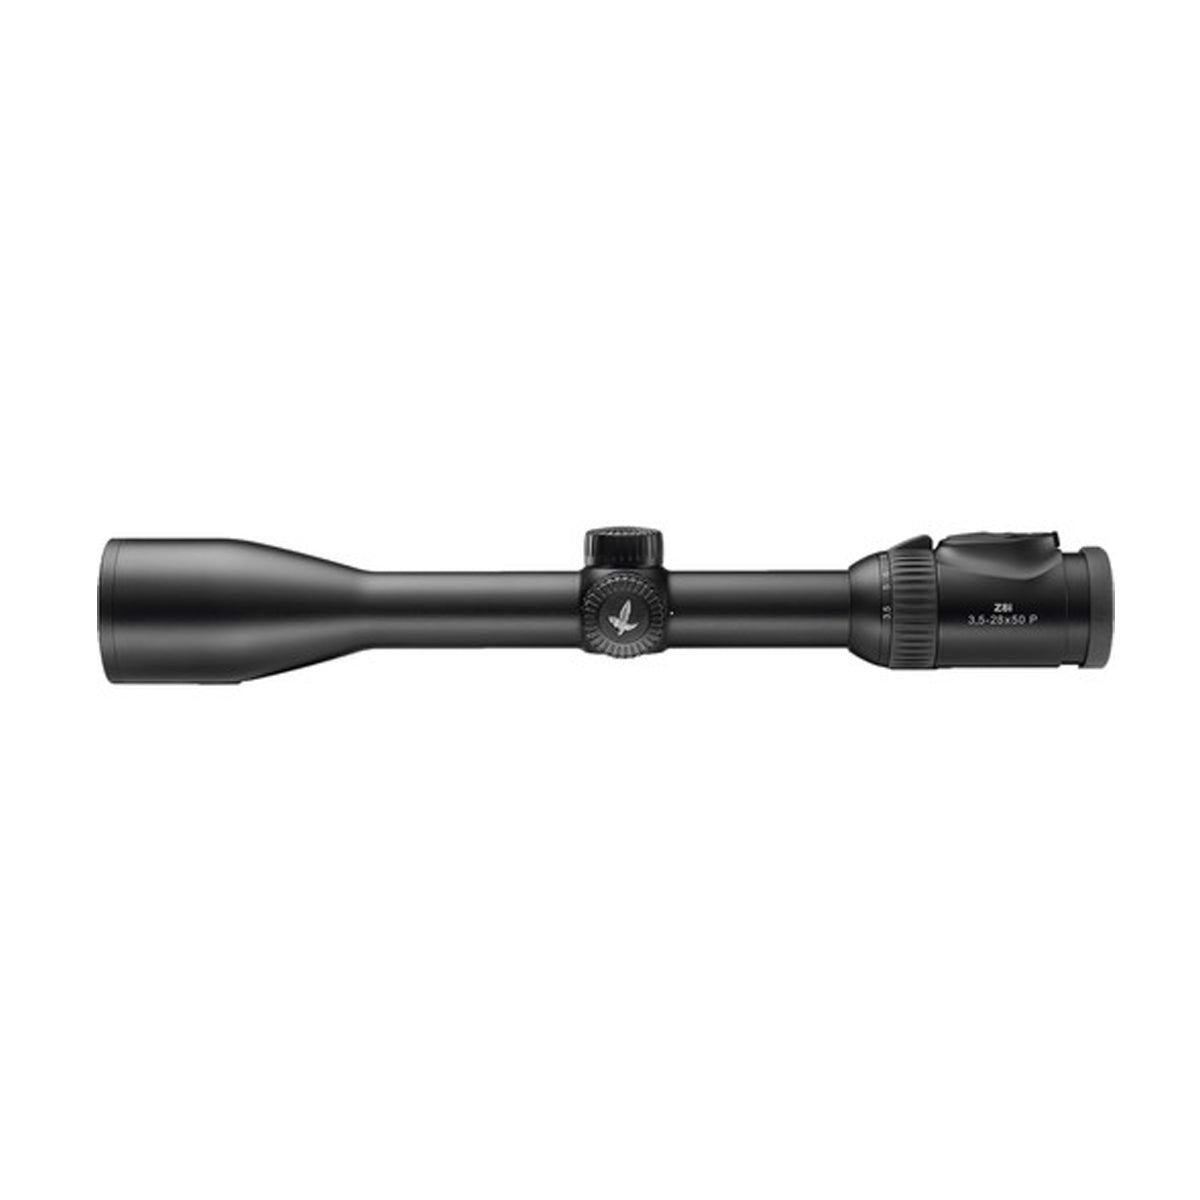 Swarovski Z8i 3.5-28x50 BRX-I Riflescope